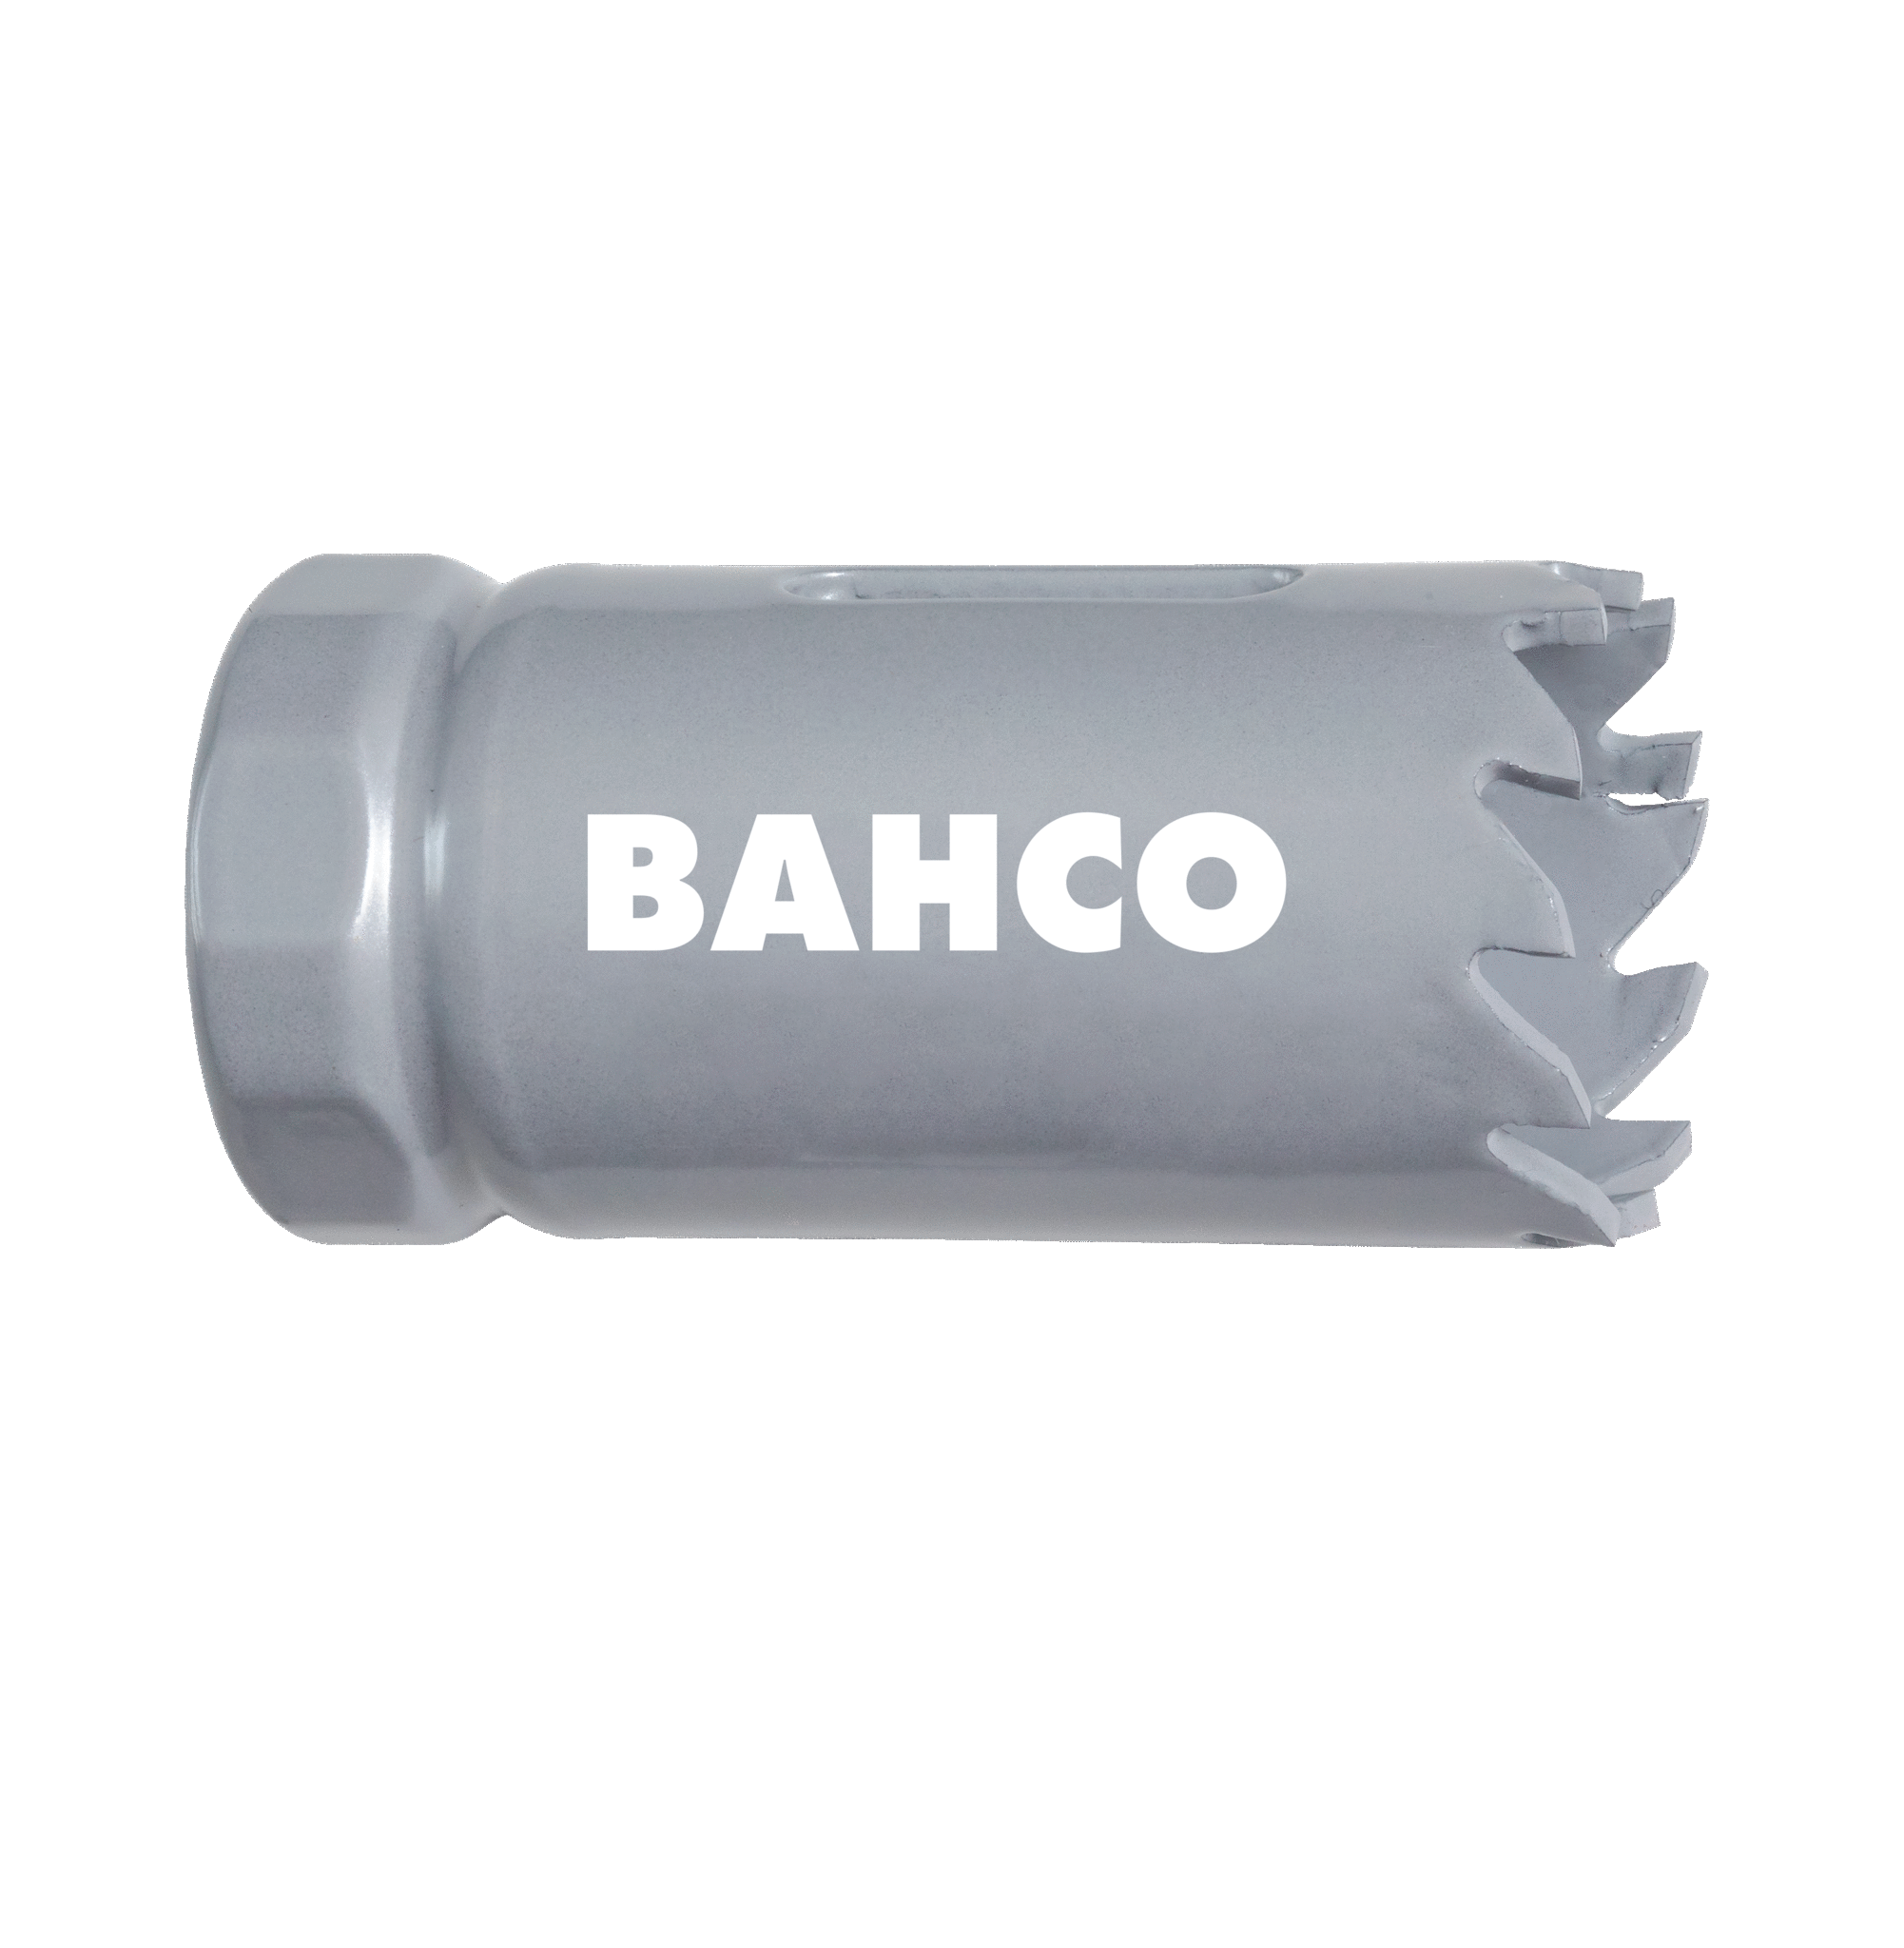 Кольцевые пилы с твердосплавными напайками BAHCO 3832-73